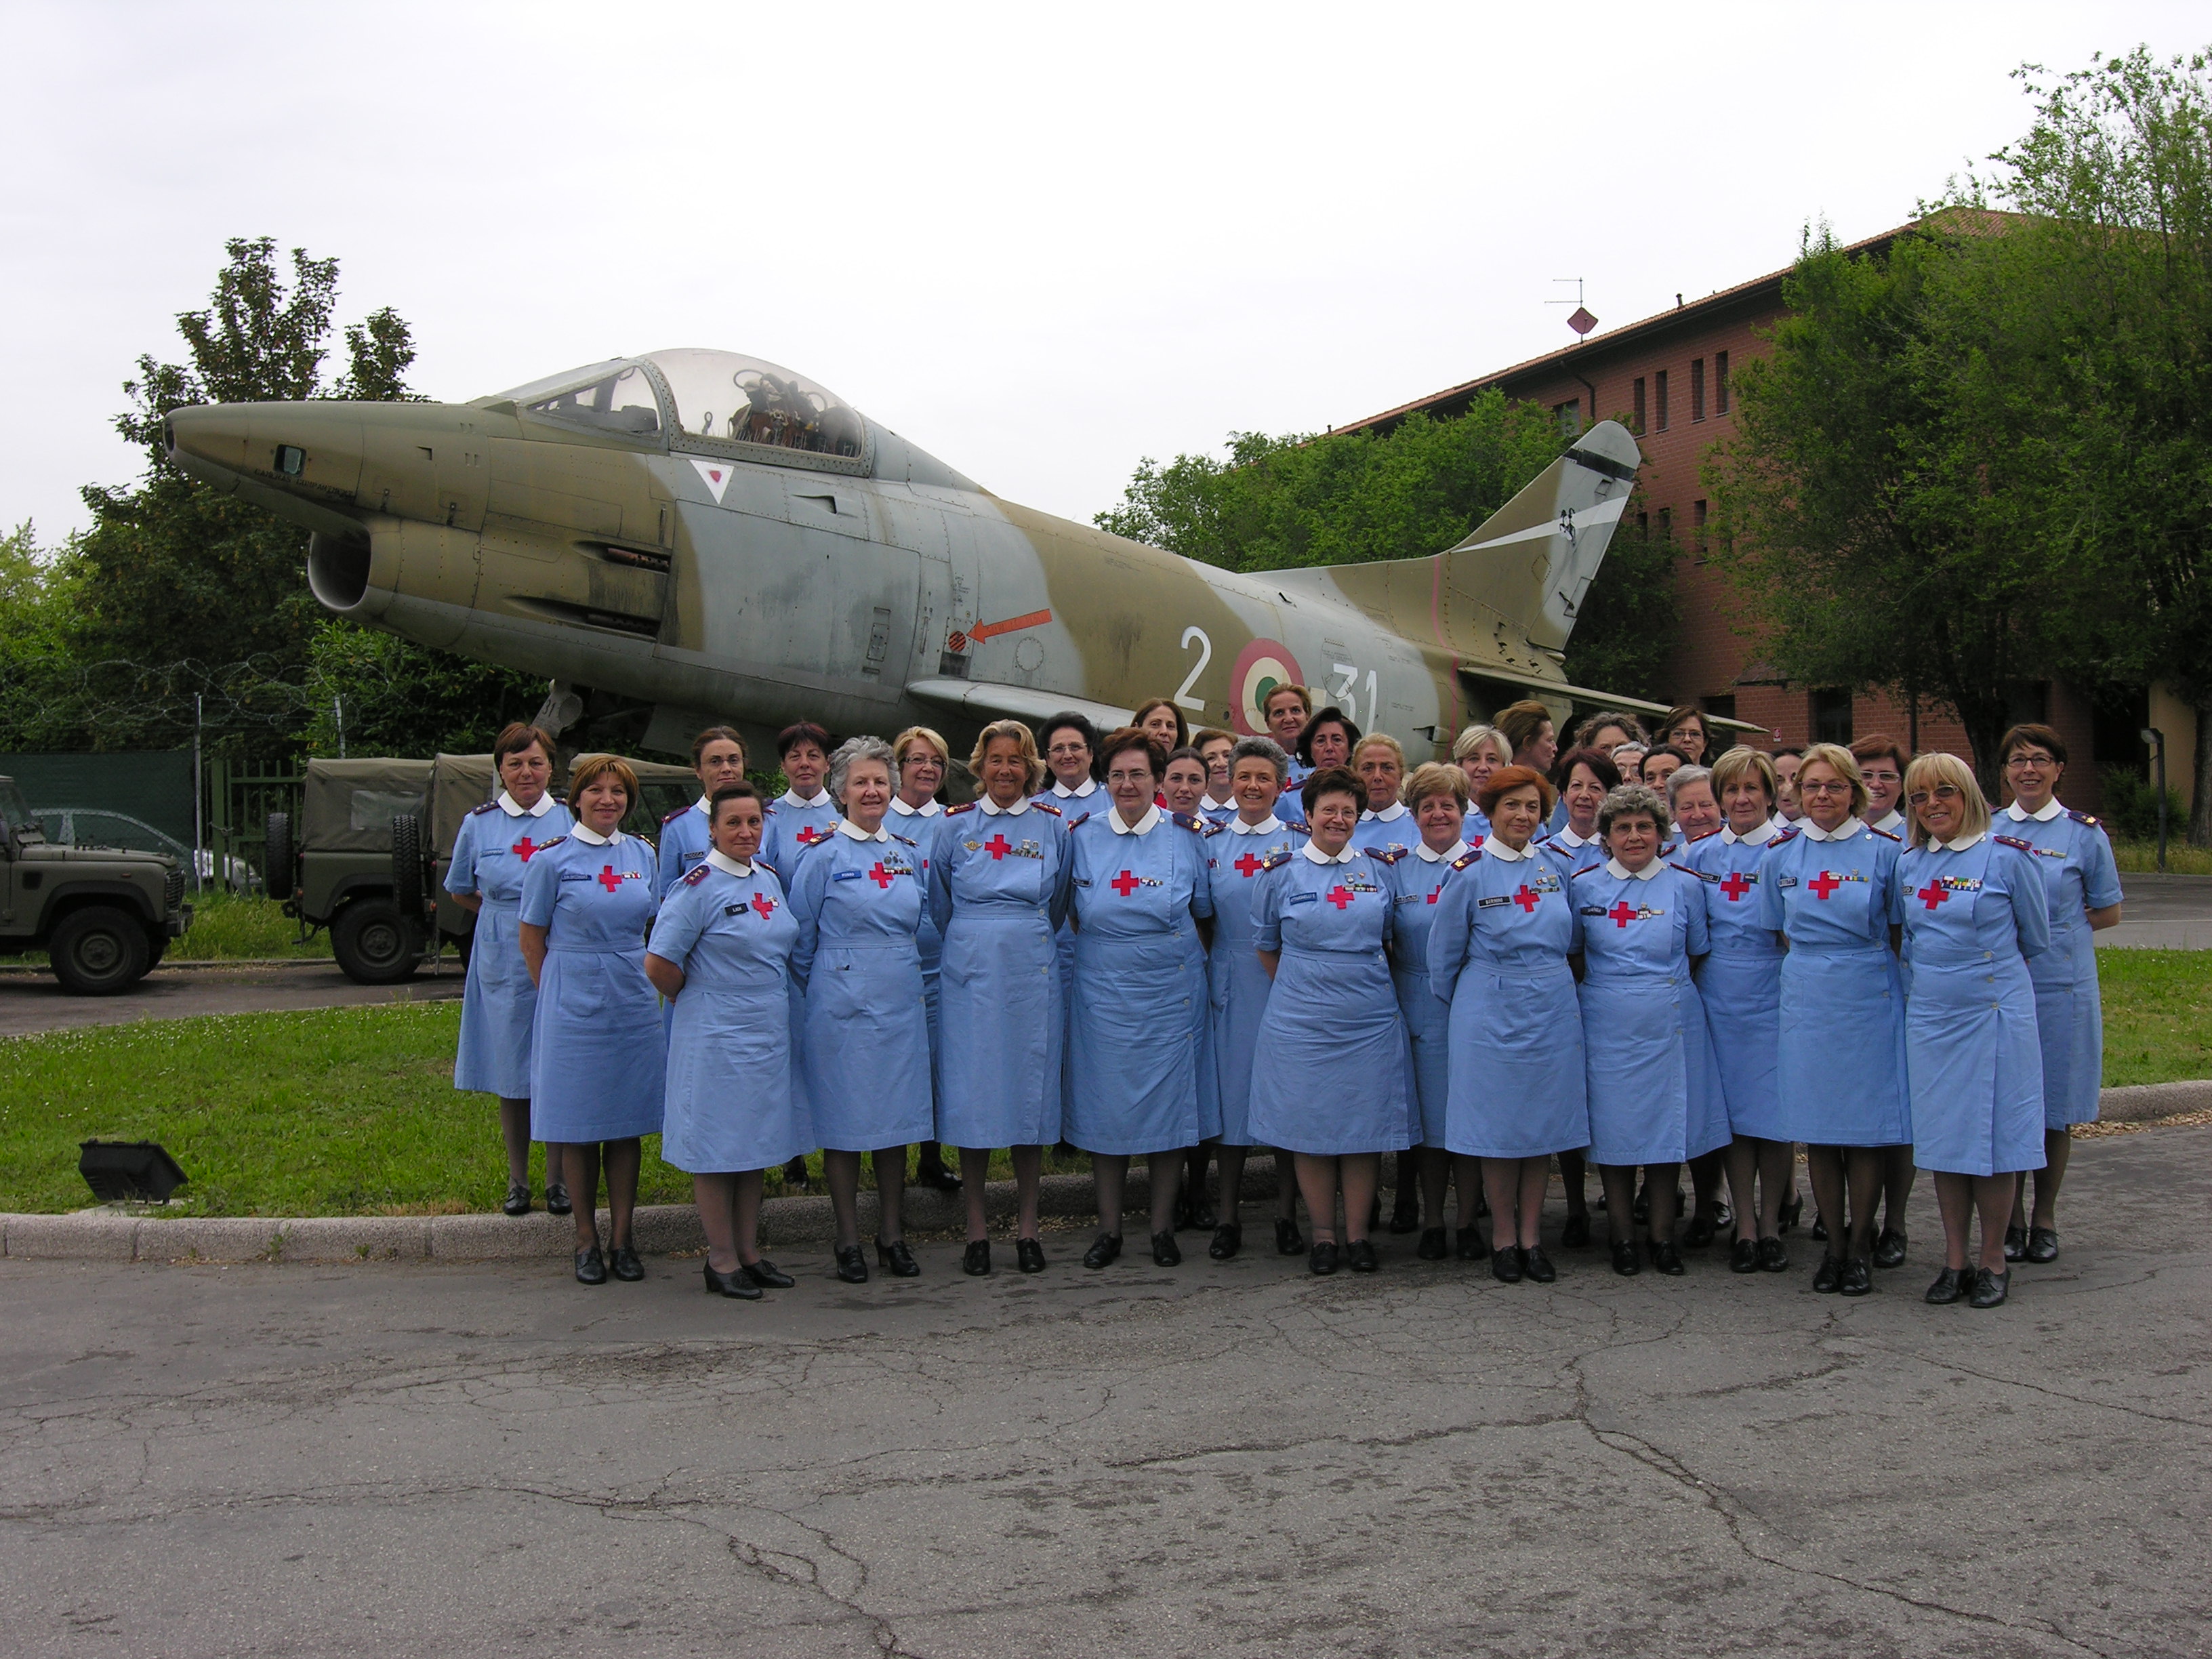 Foto di gruppo all'esterno con lo sfondo di un aereo militare